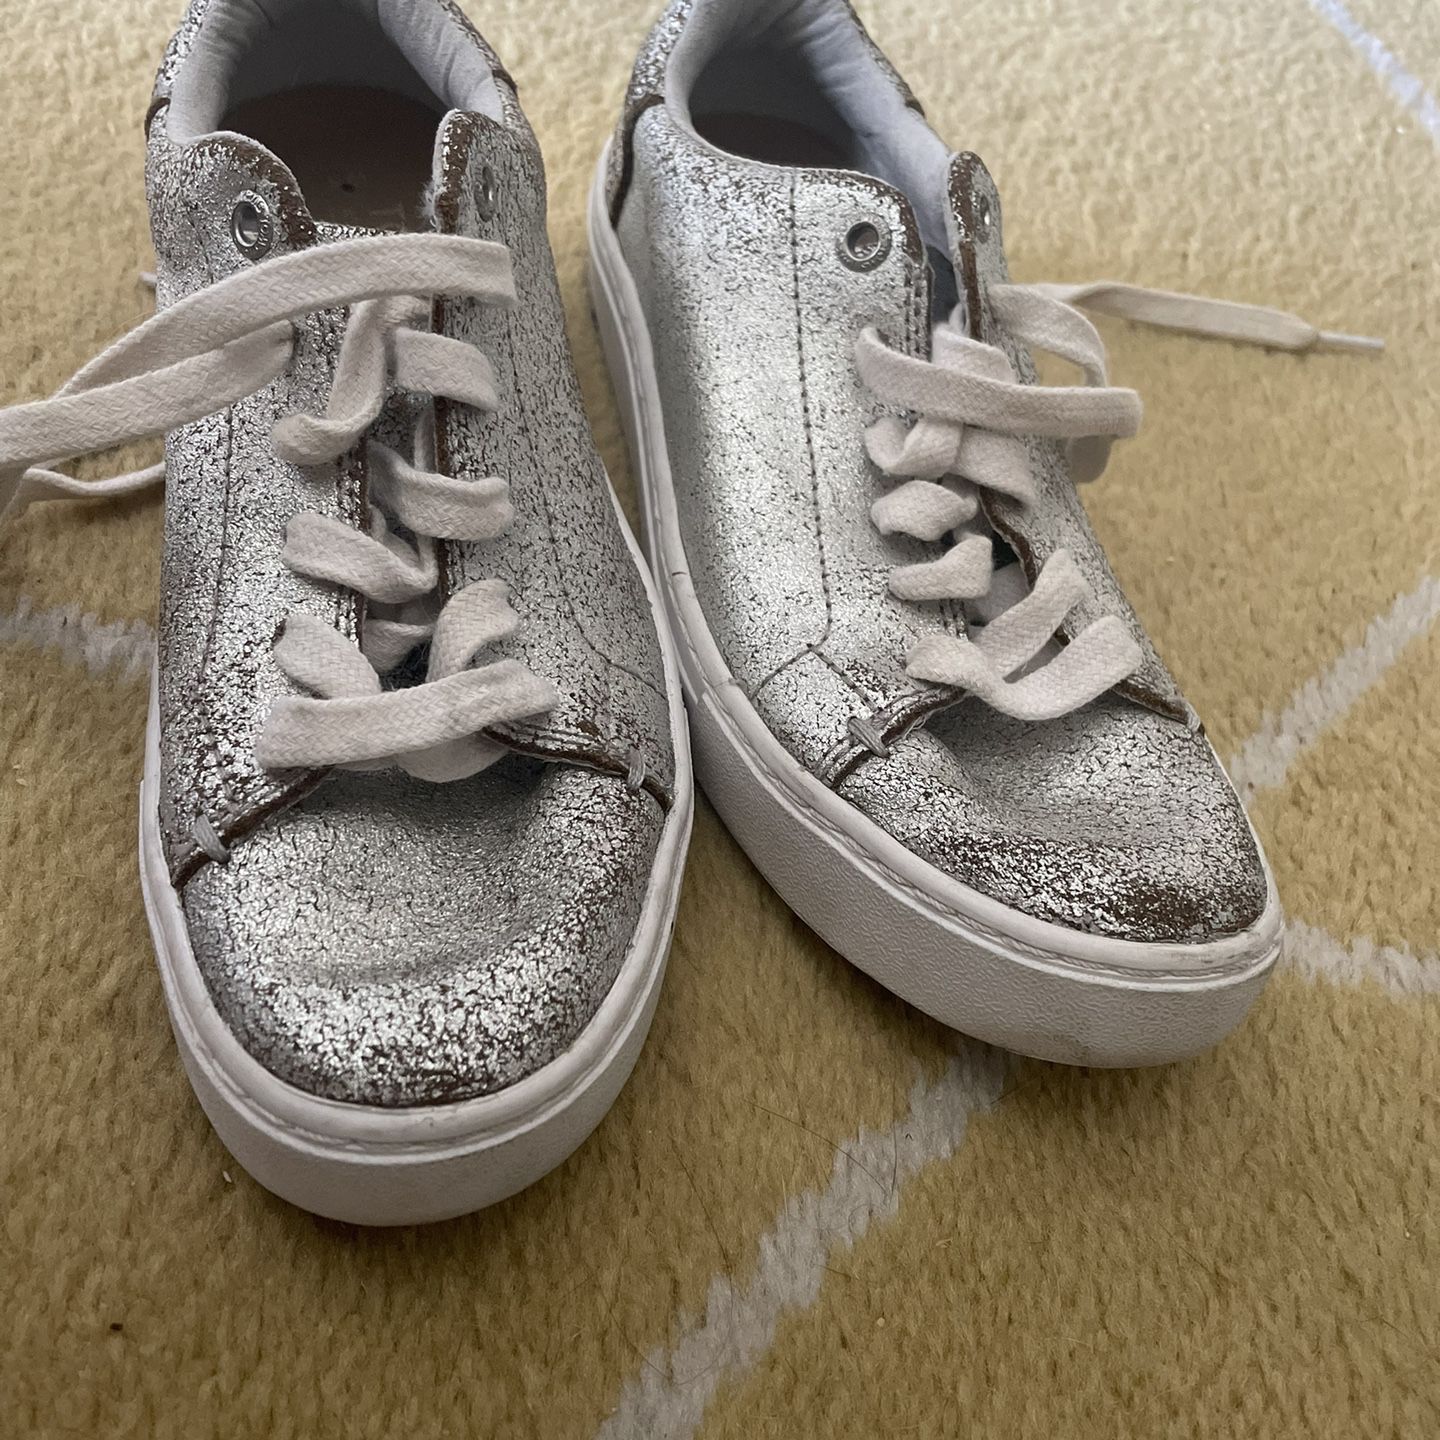 Toms Children Shoes Size 2.5